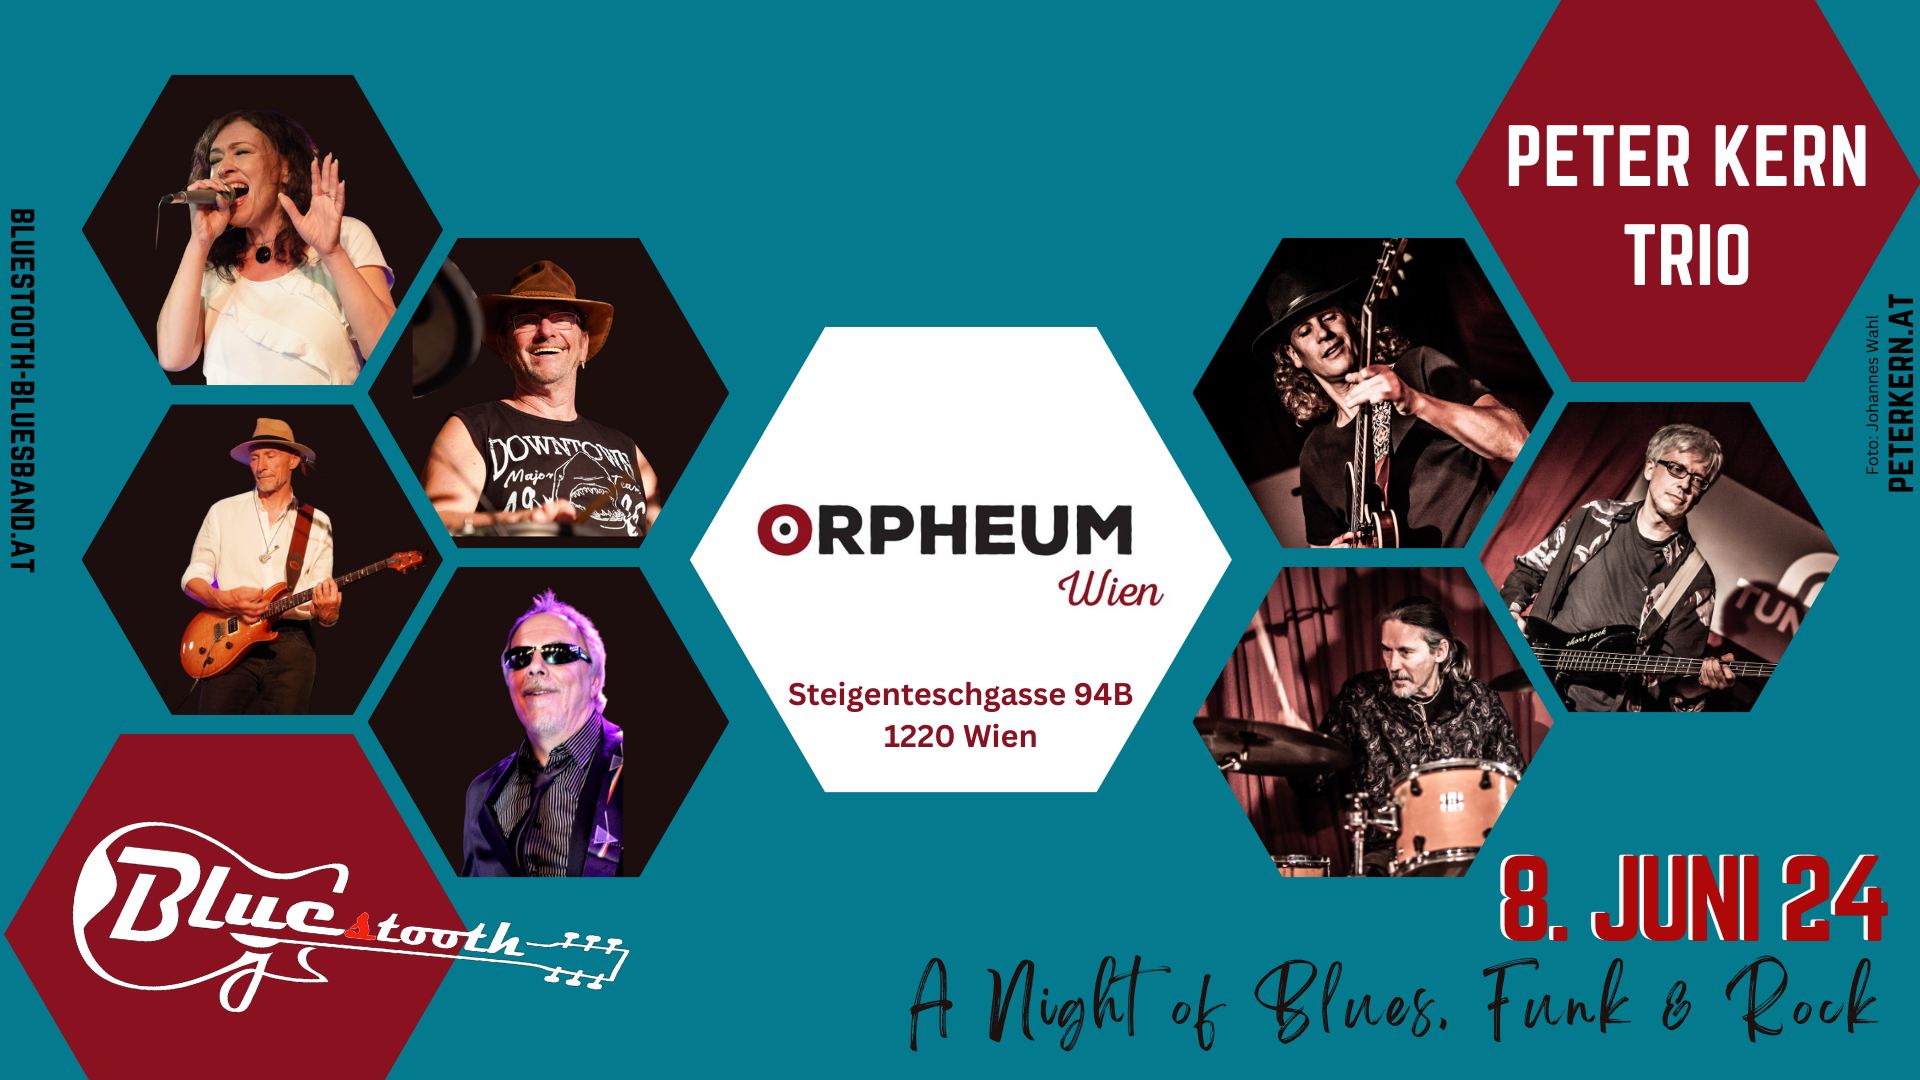 Bluestooth & Peter Kern Trio @ Orpheum Wien